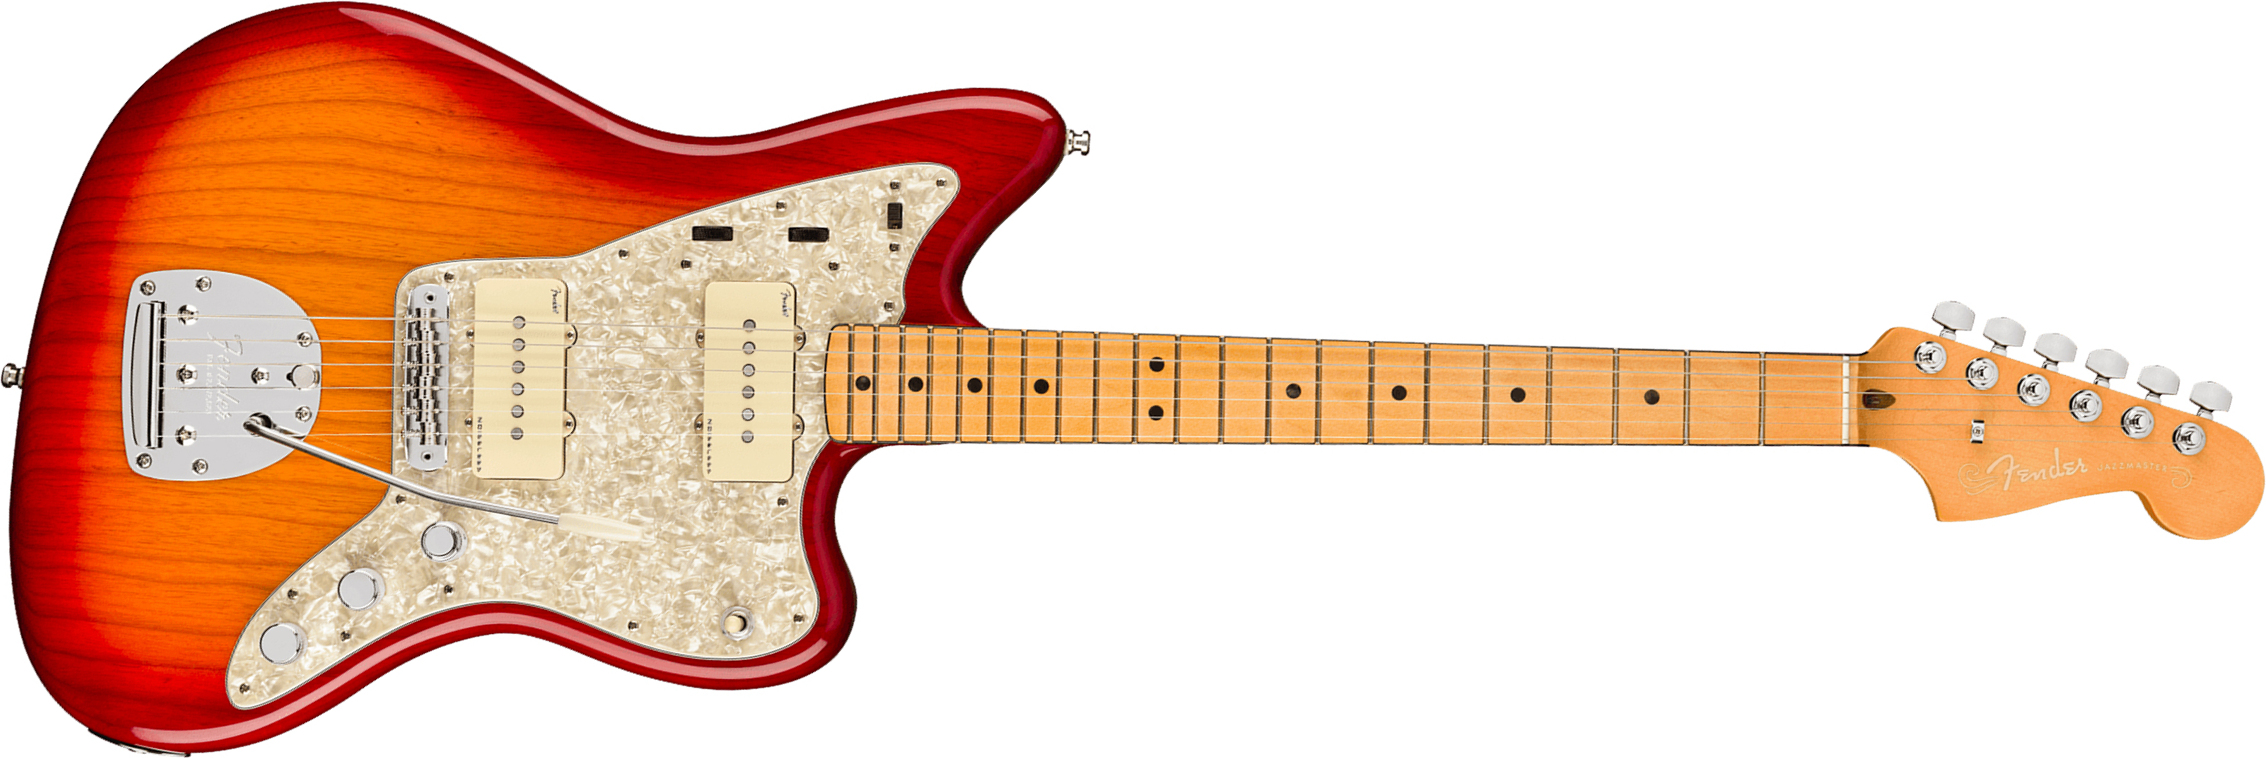 Fender Jazzmaster American Ultra 2019 Usa Mn - Plasma Red Burst - Retro-rock elektrische gitaar - Main picture